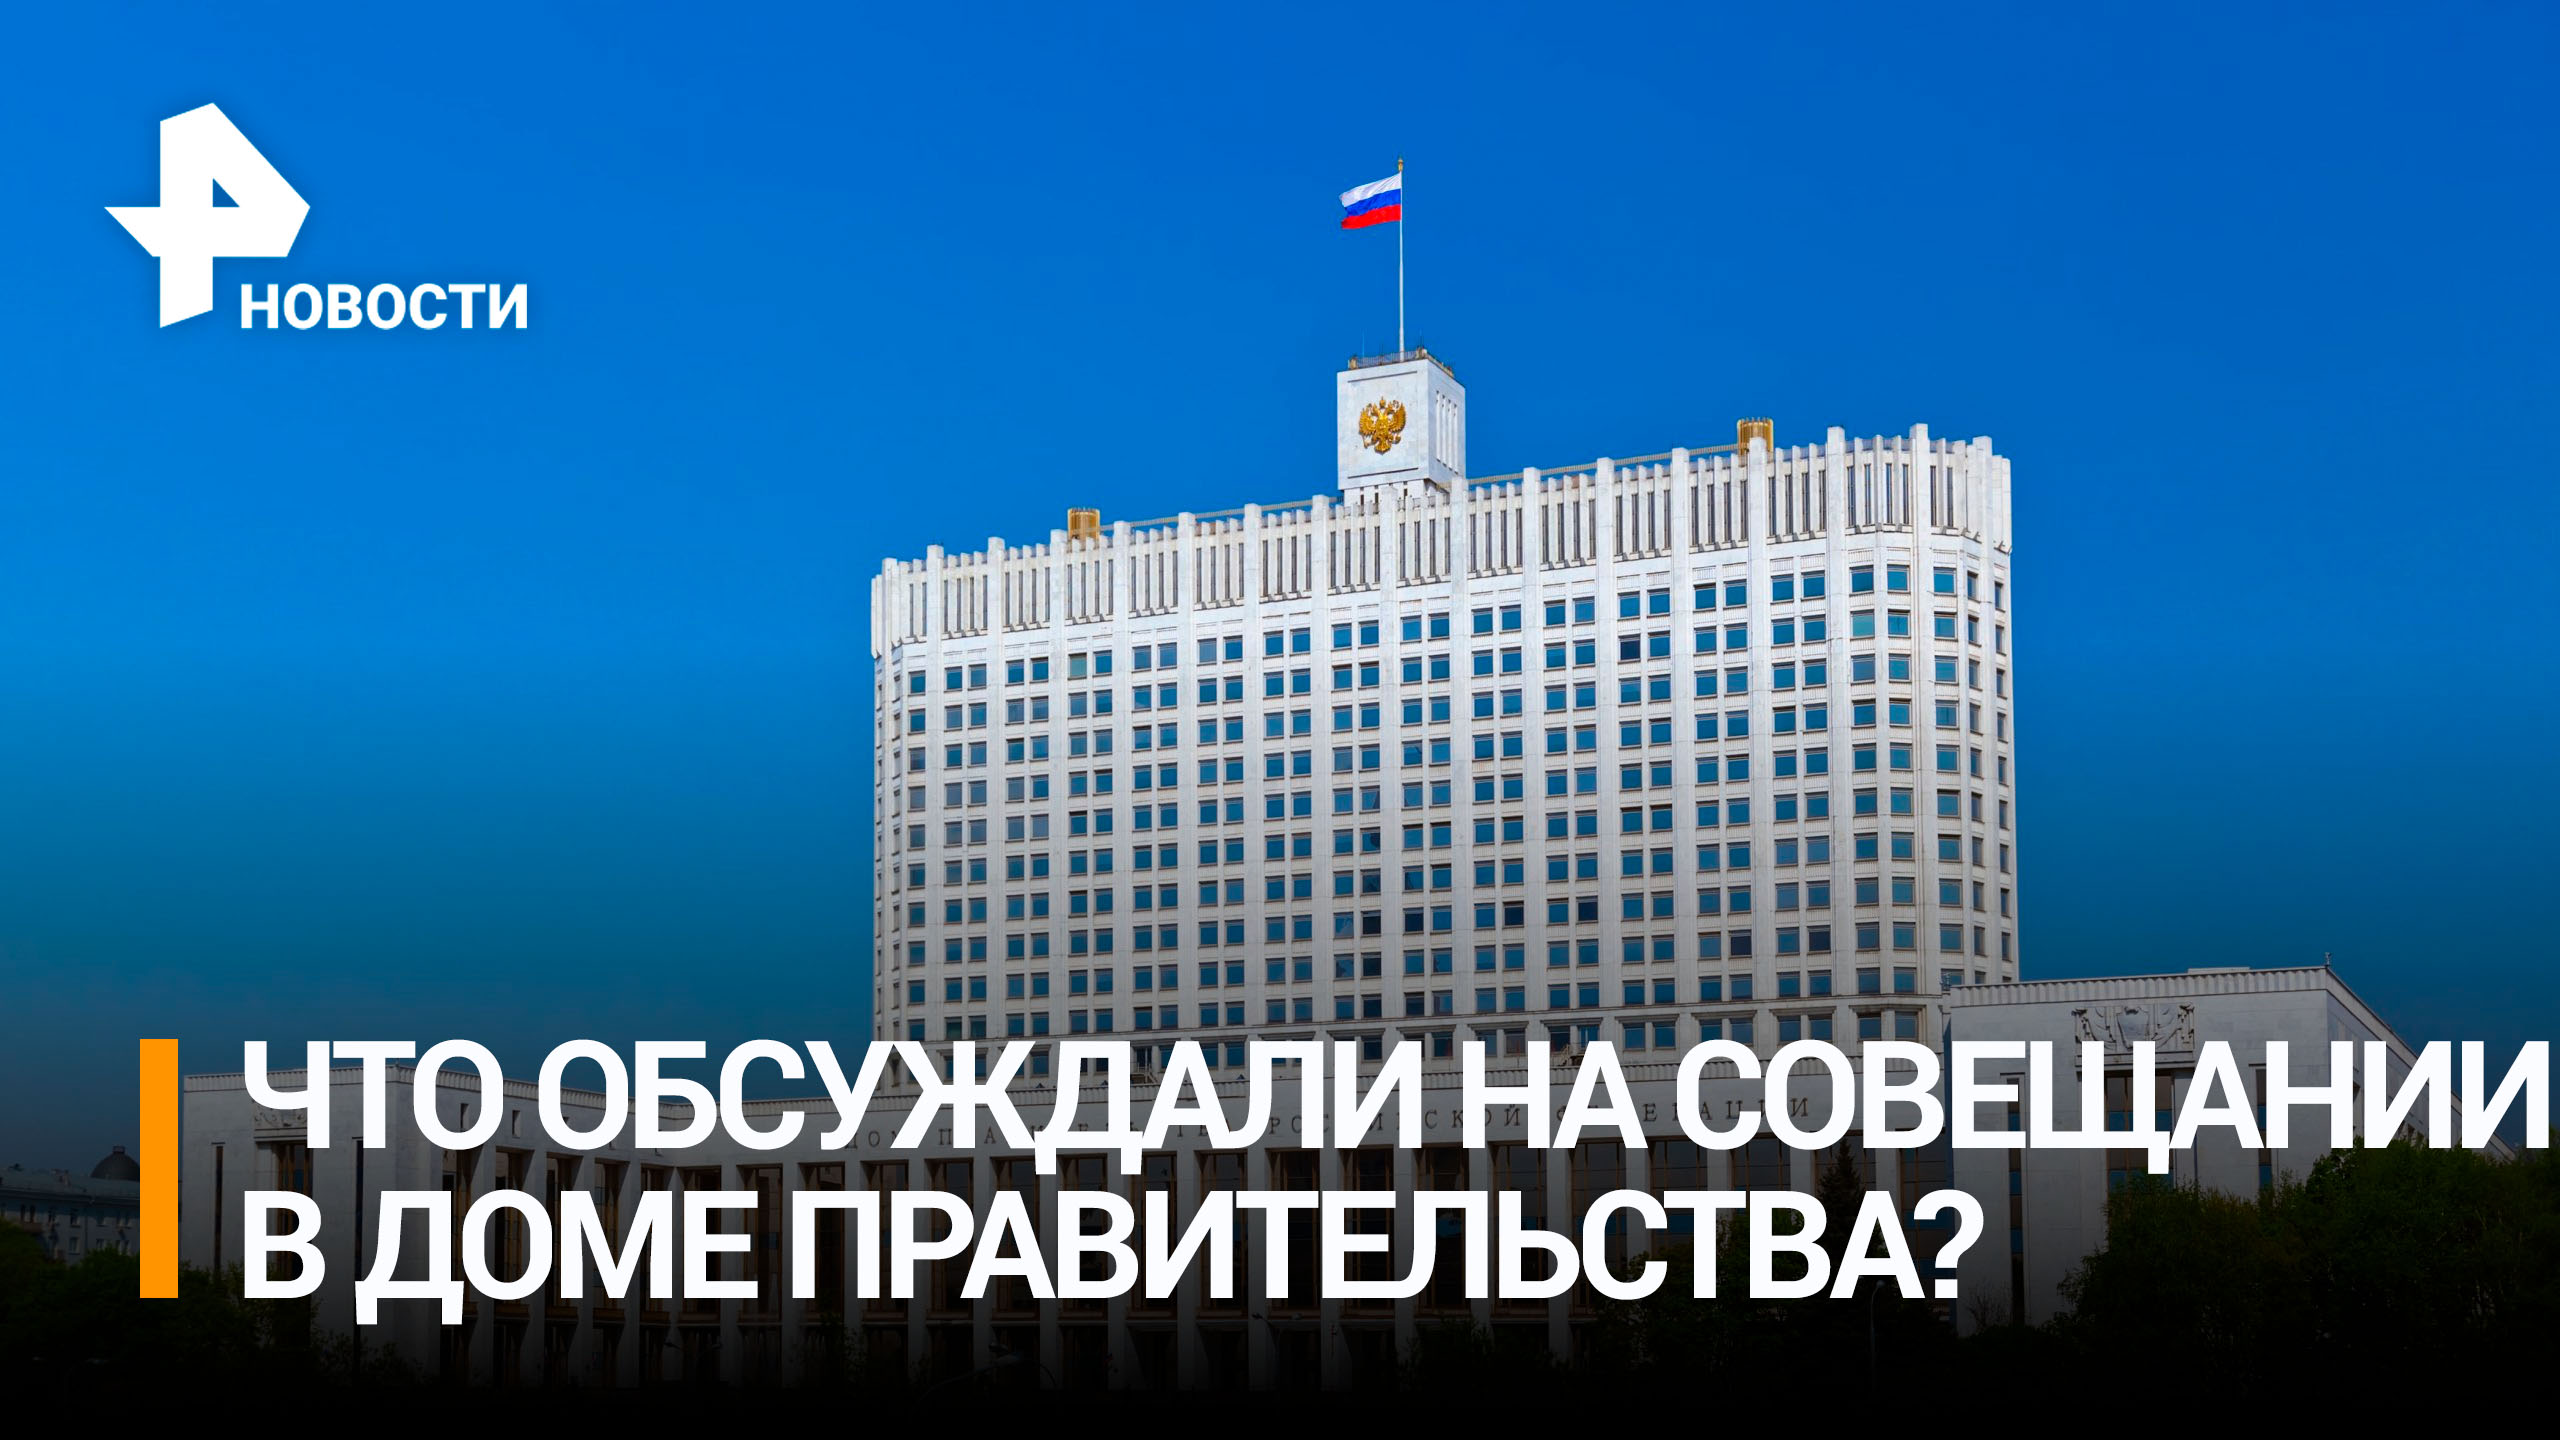 Совещание в Доме правительства / РЕН Новости